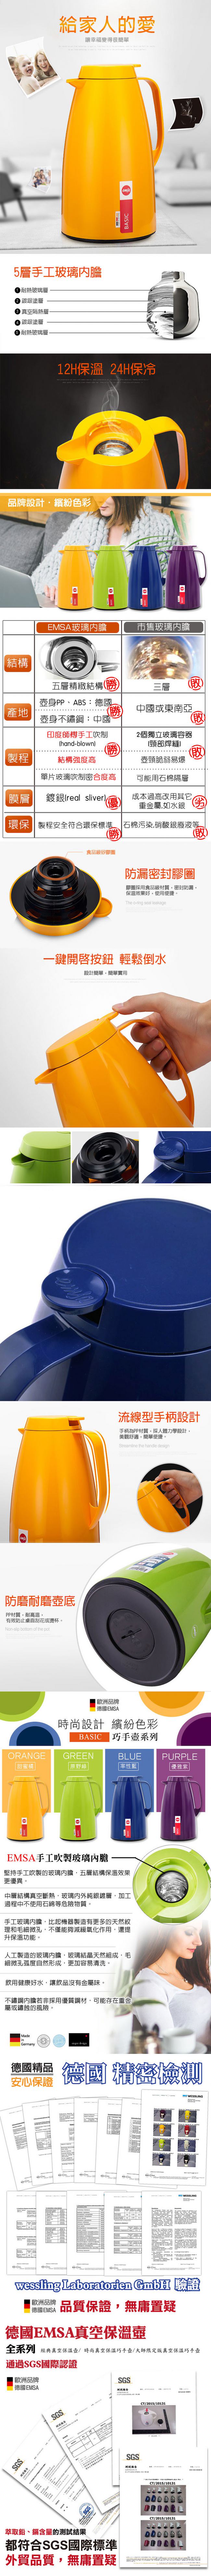 德國EMSA 頂級真空保溫壺 巧手壺系列BASIC (保固5年) 1.0L 率性藍